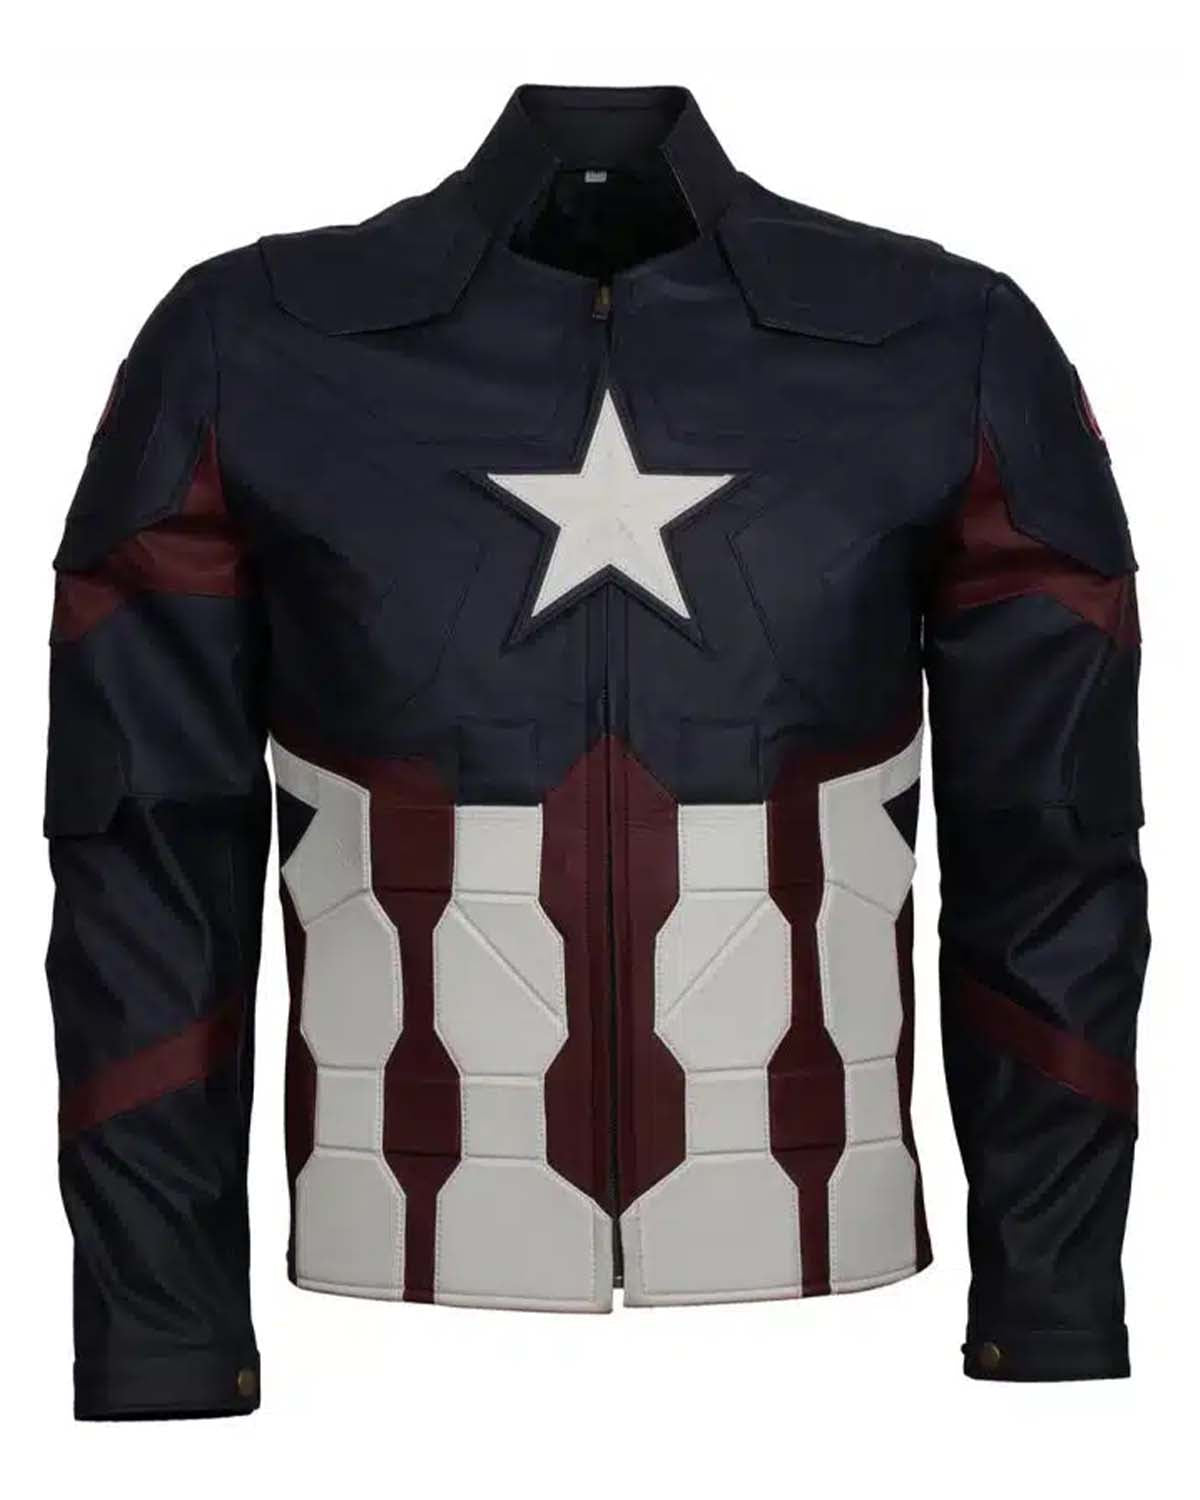 Elite Avengers Endgame Captain America Jacket